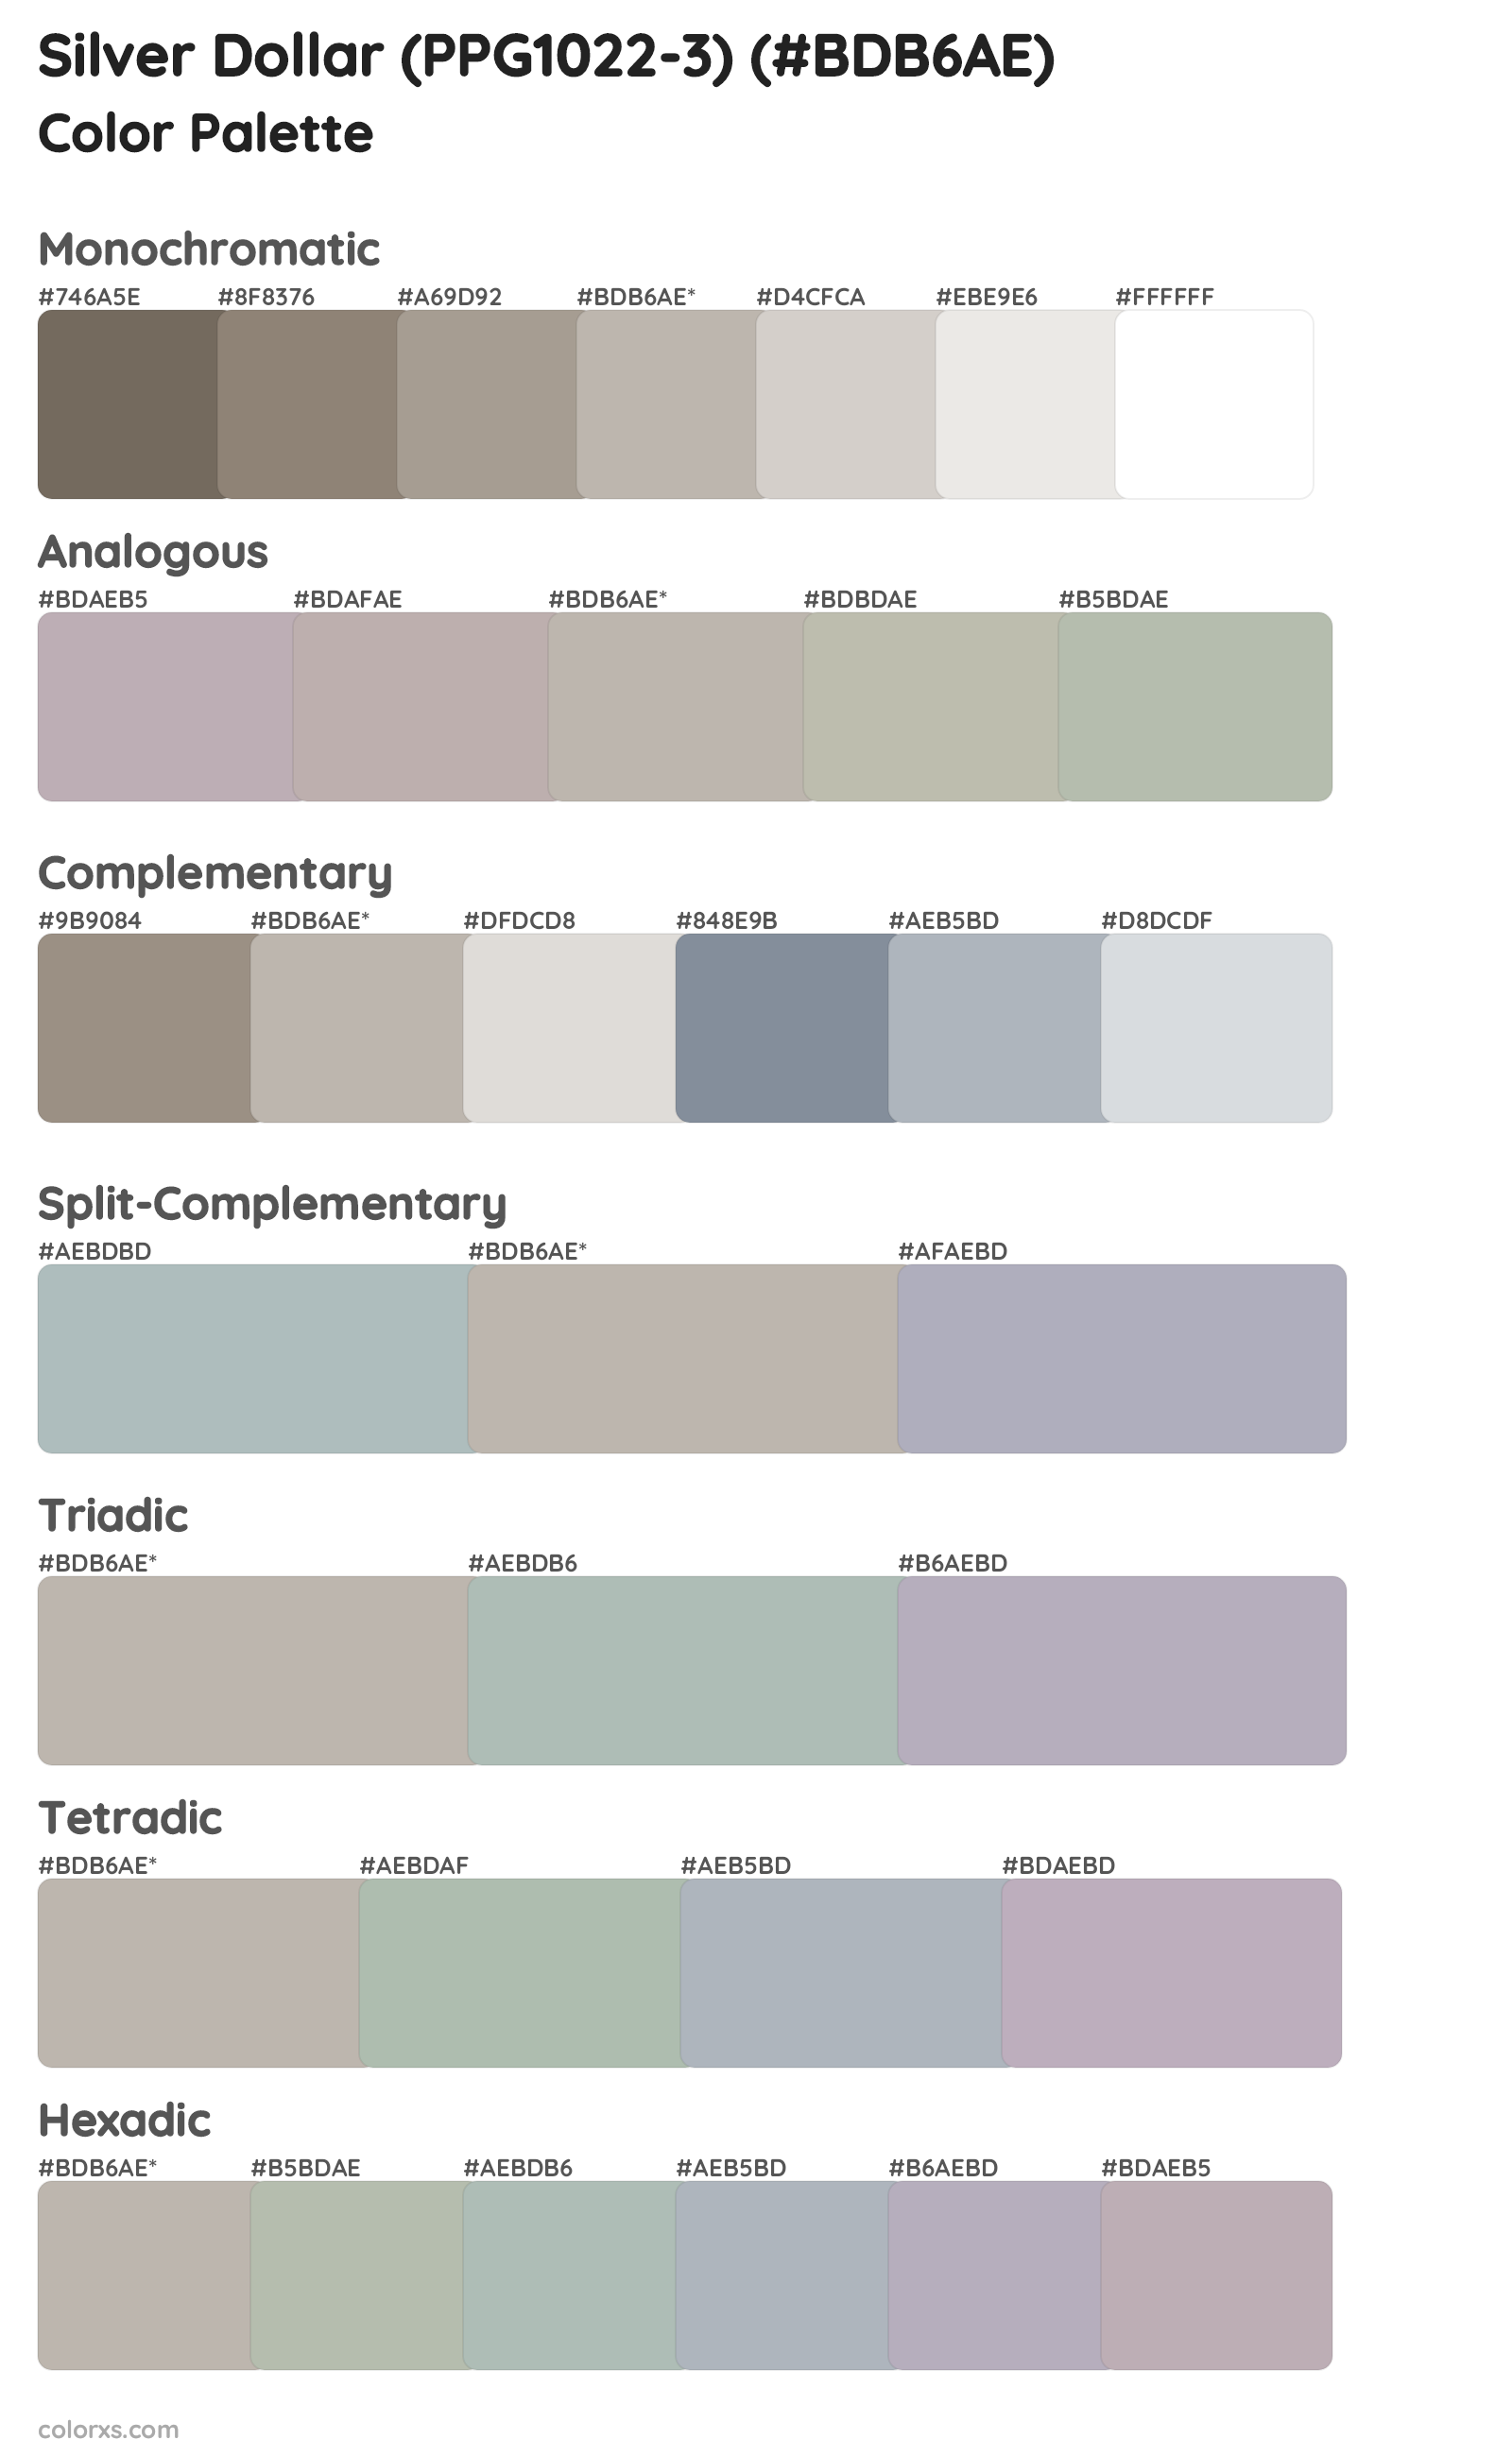 Silver Dollar (PPG1022-3) Color Scheme Palettes